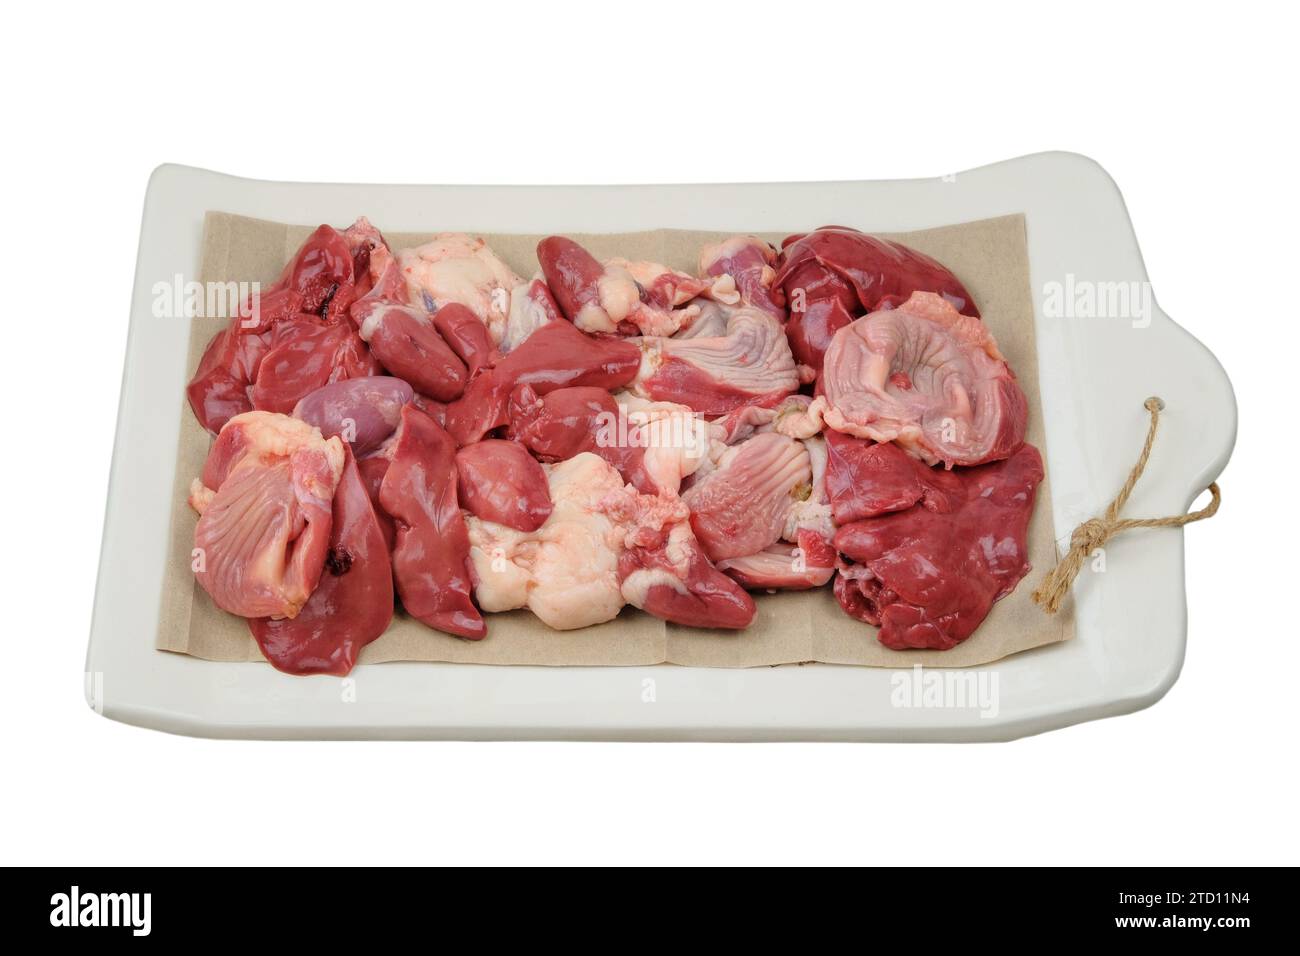 Abats de poulet sur une planche en céramique isolé sur fond blanc. Les estomacs de poulet, les coeurs et les foies sont préparés pour la cuisson. Viande crue. Banque D'Images